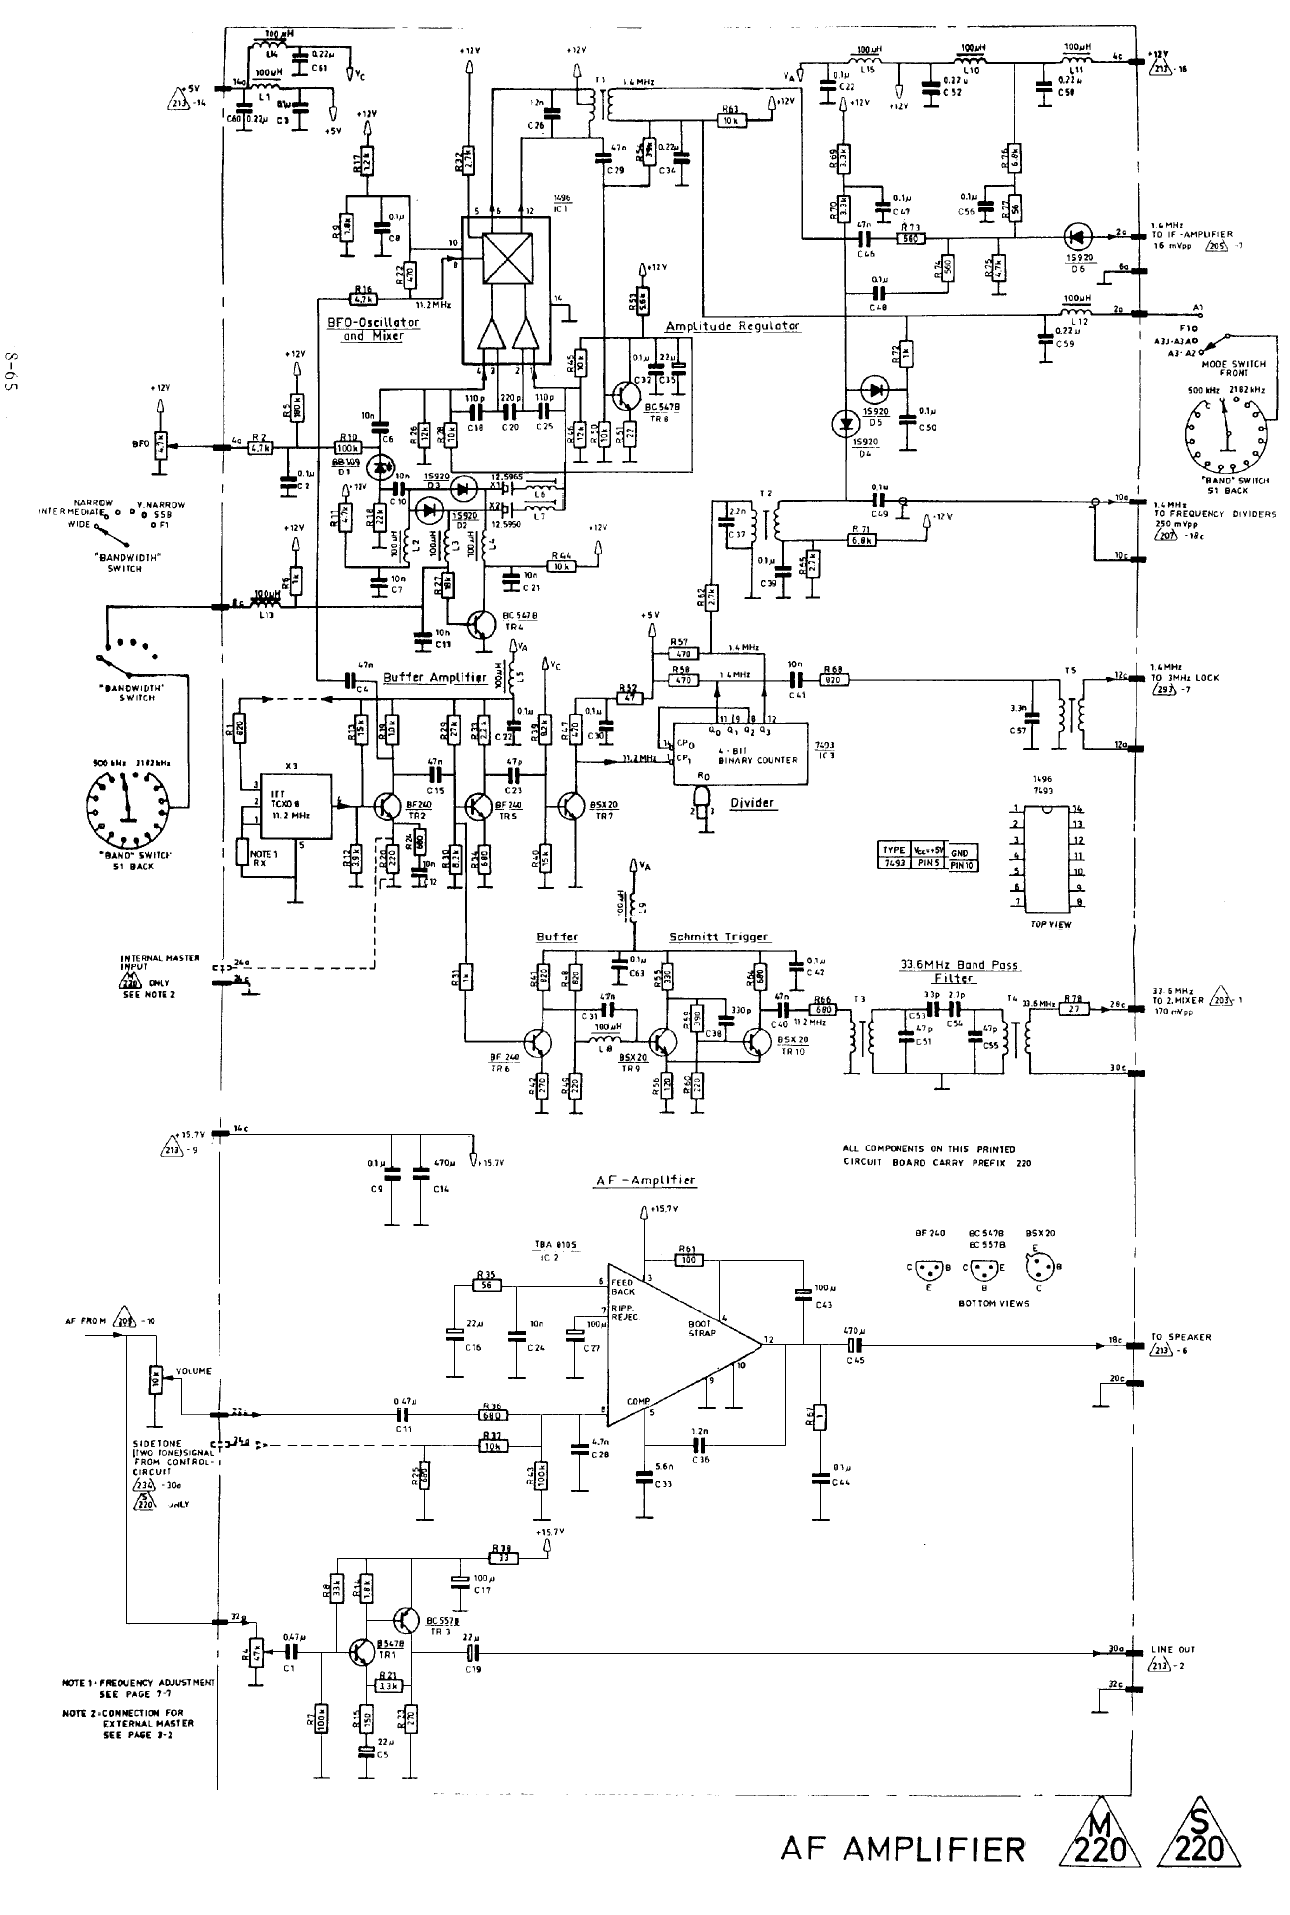 Skanti HF R-5001 IF Amplifier detector & AGC diagram 2220